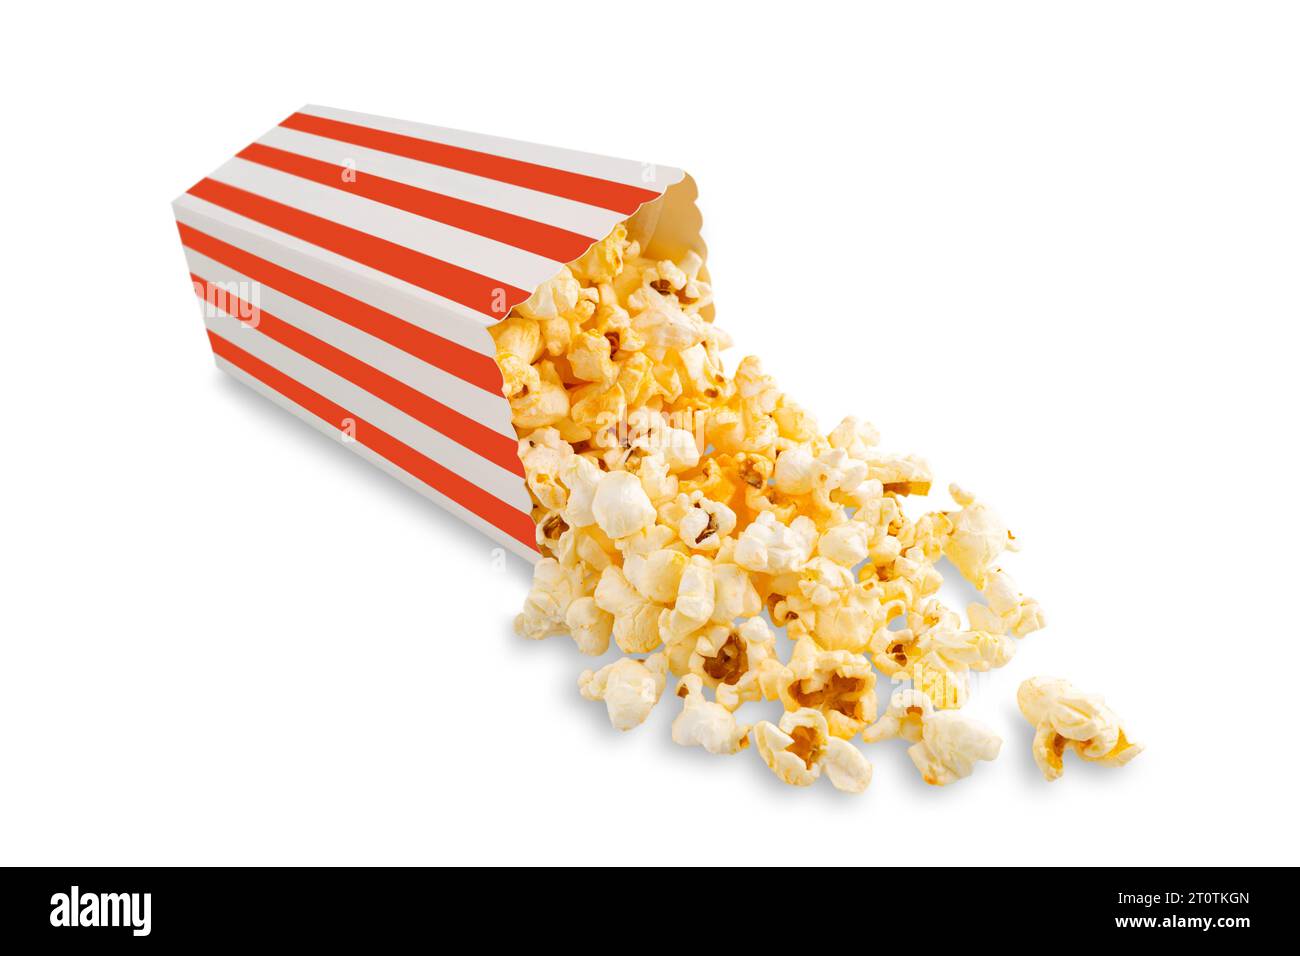 Gustosi popcorn al formaggio che cadono da un secchio di cartone a righe rosse, isolato su sfondo bianco. Dispersione di semi di popcorn. Film, cinema e intrattenimento Foto Stock